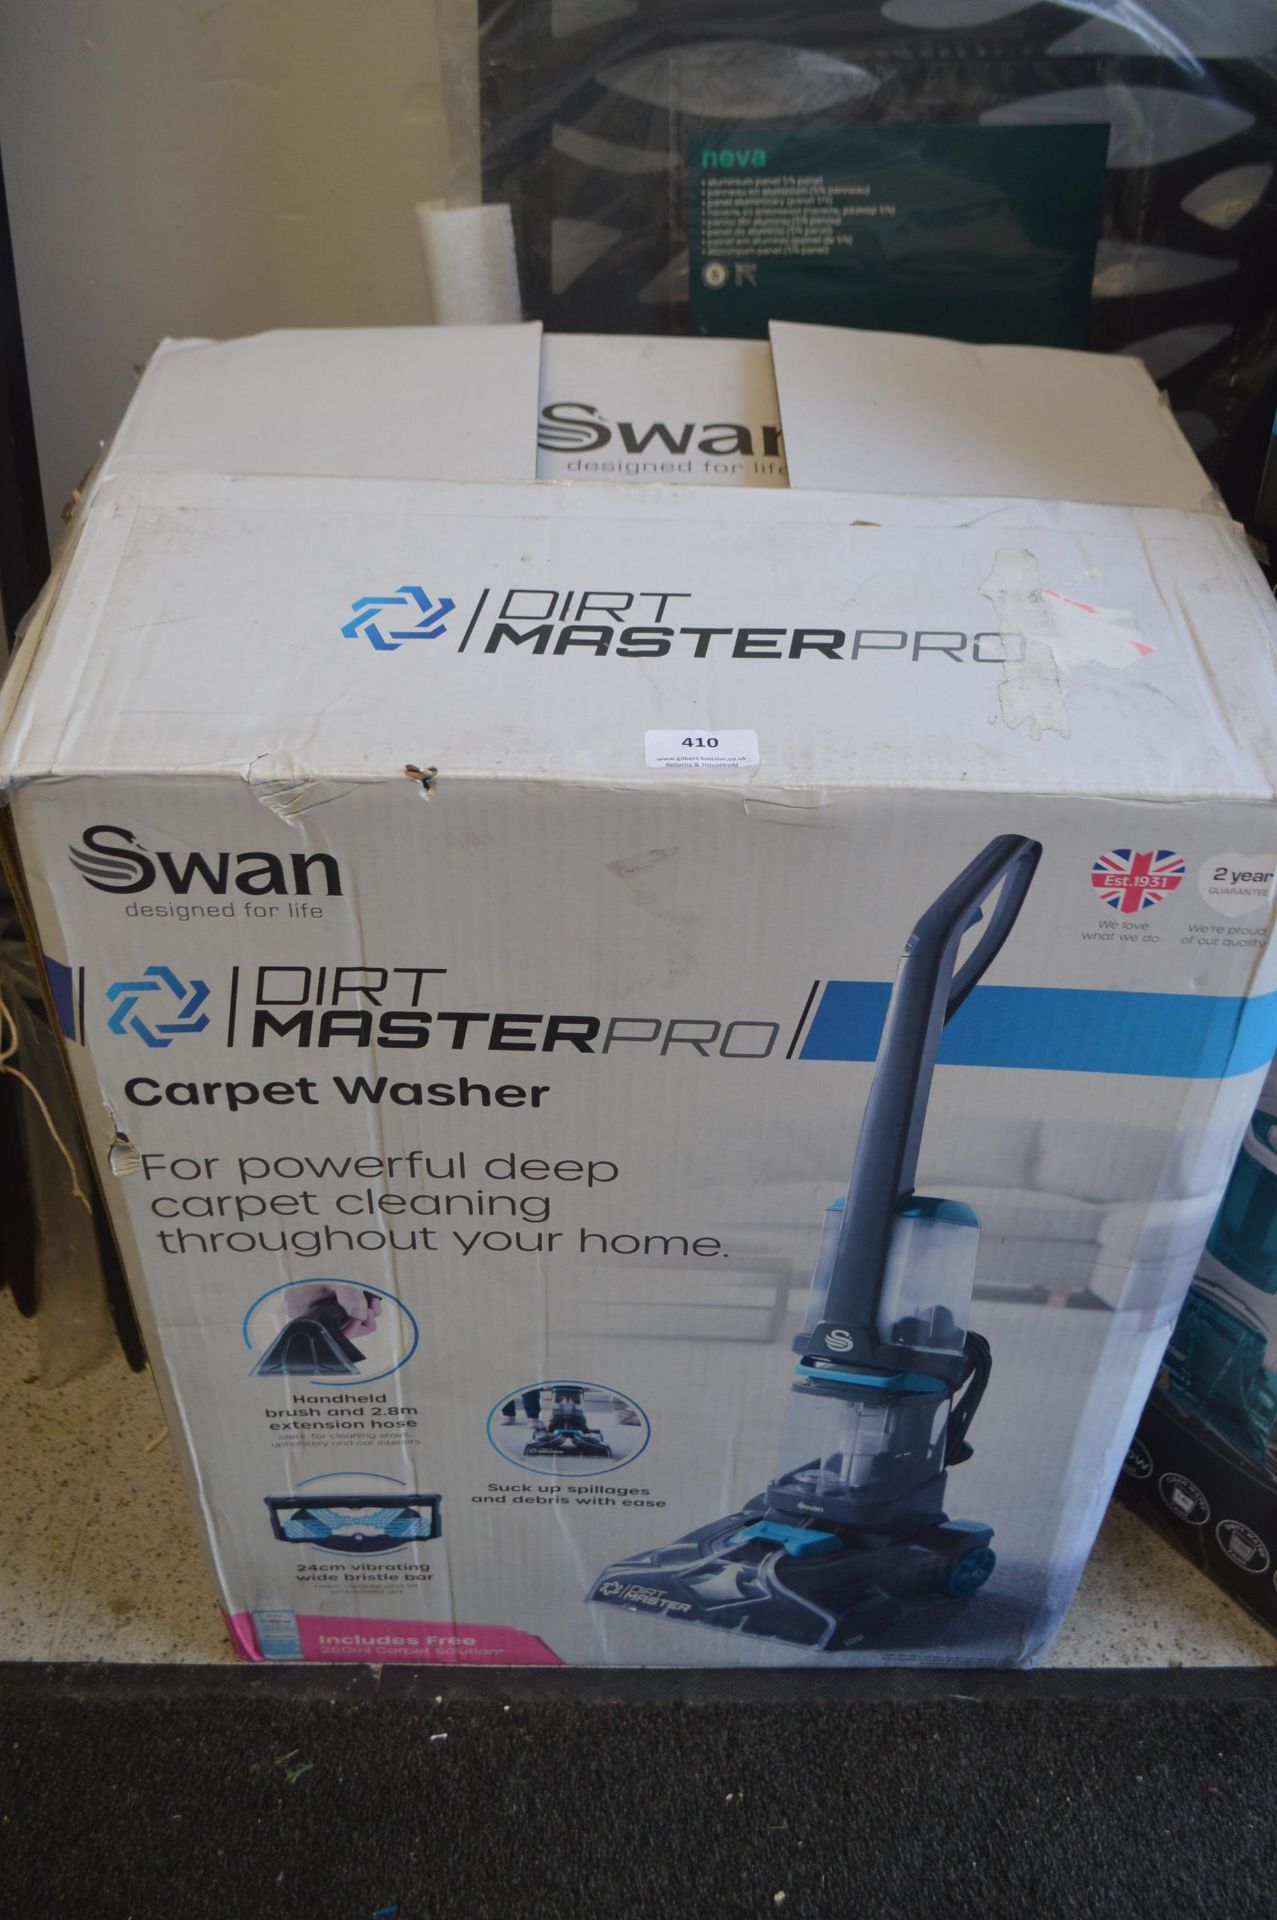 *Swan Dirt Master Pro Carpet Washer